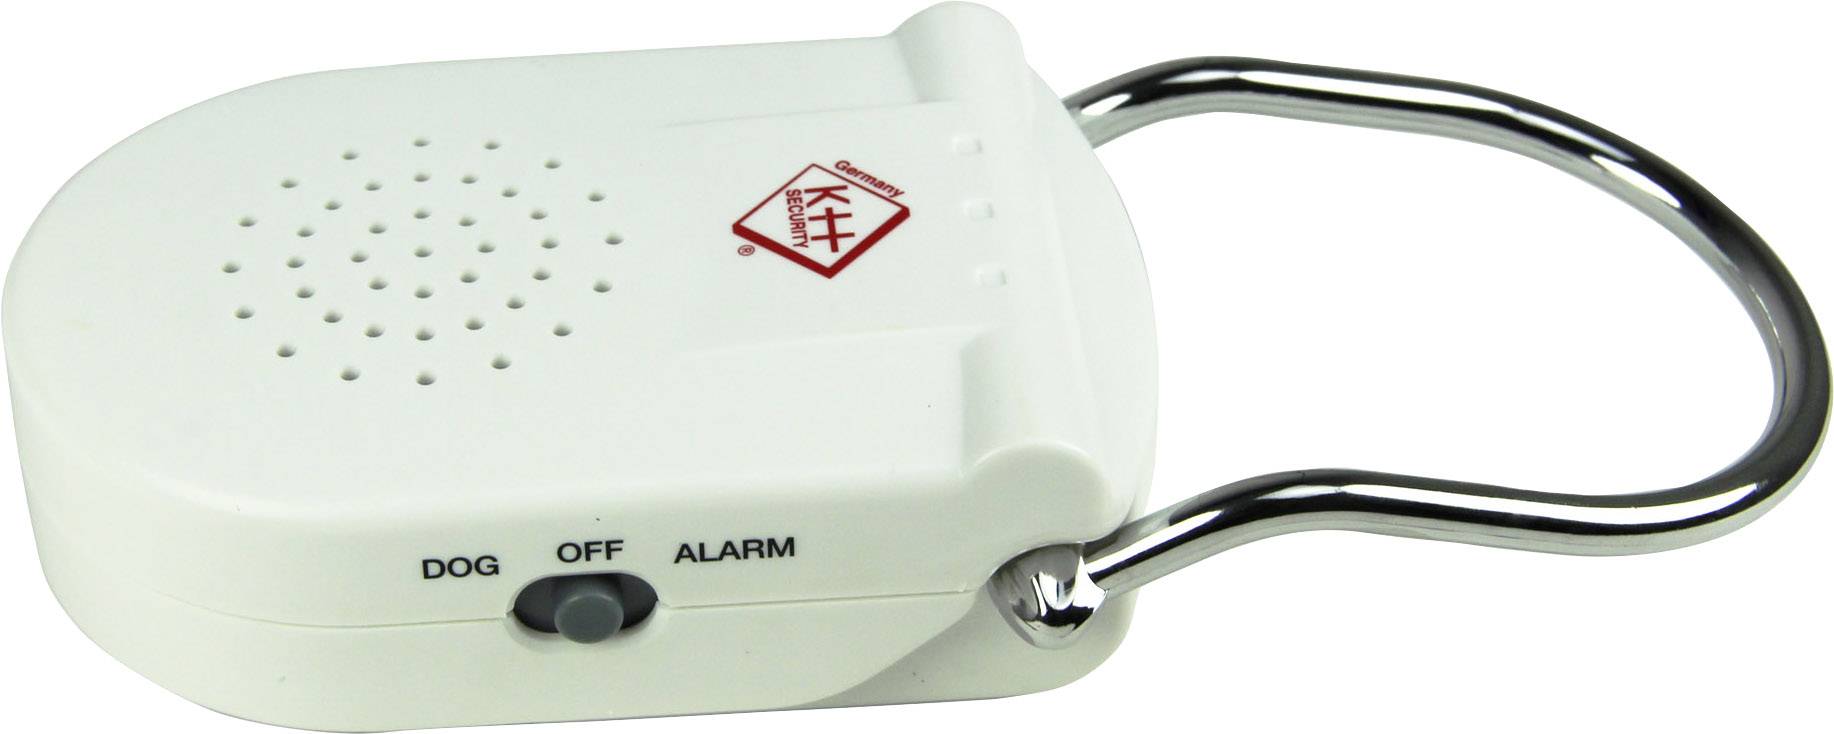 KH 100183: Elektronischer Türgriff-Alarm, mobile Alarmanlage bei reichelt  elektronik